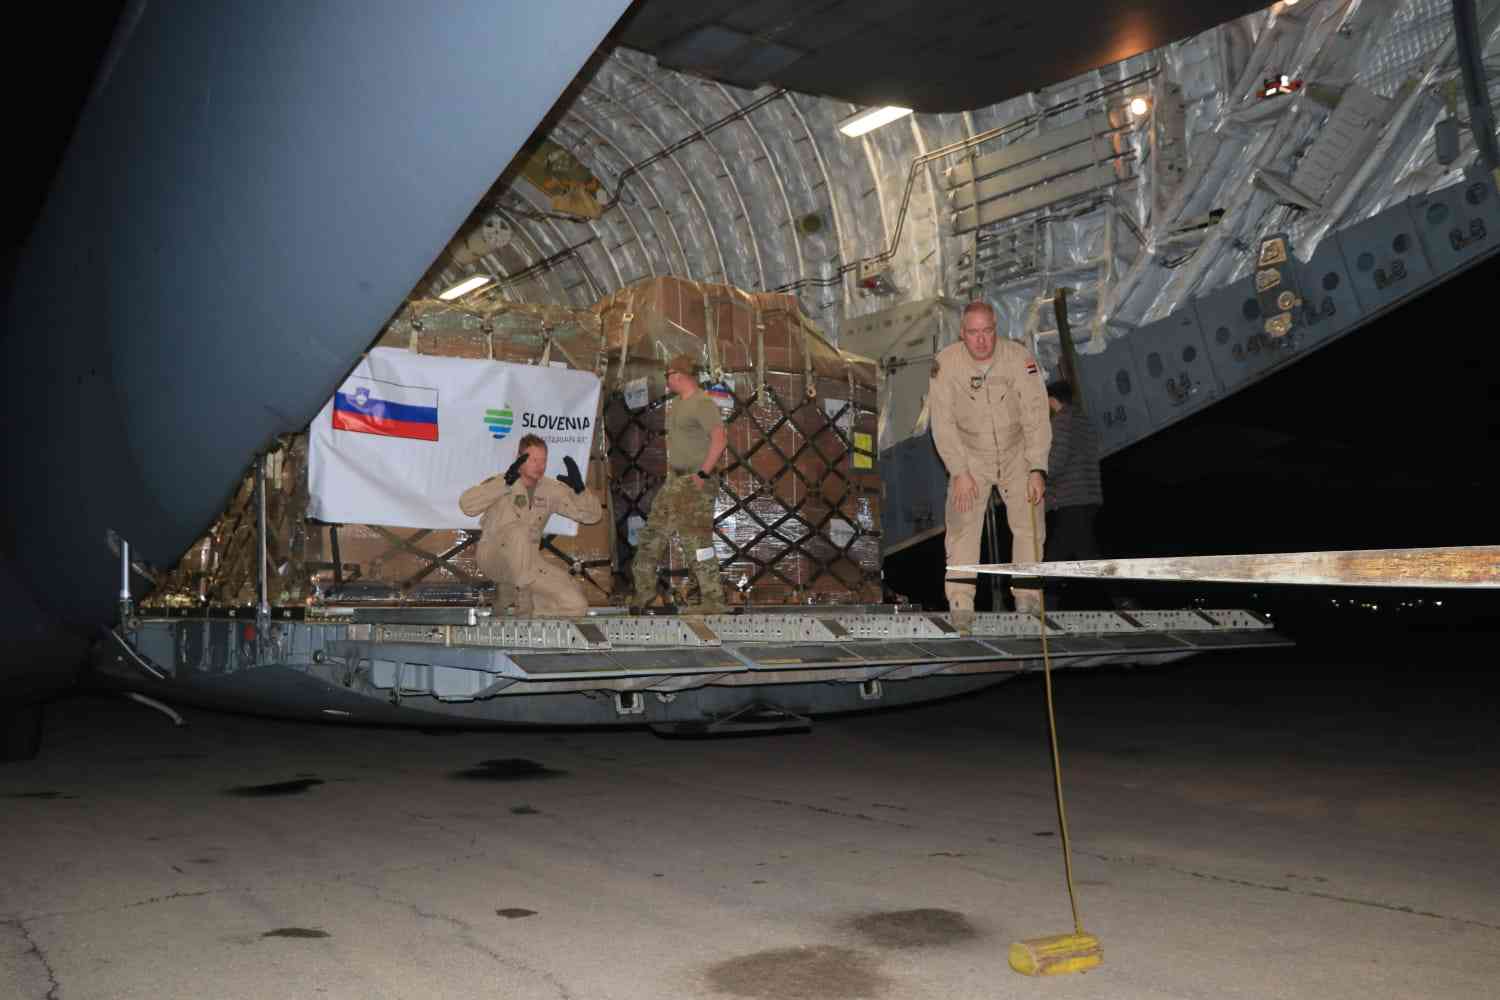 سلوفينيا ترسل طائرة مساعدات لقطاع غزة عبر الأردن (صور)